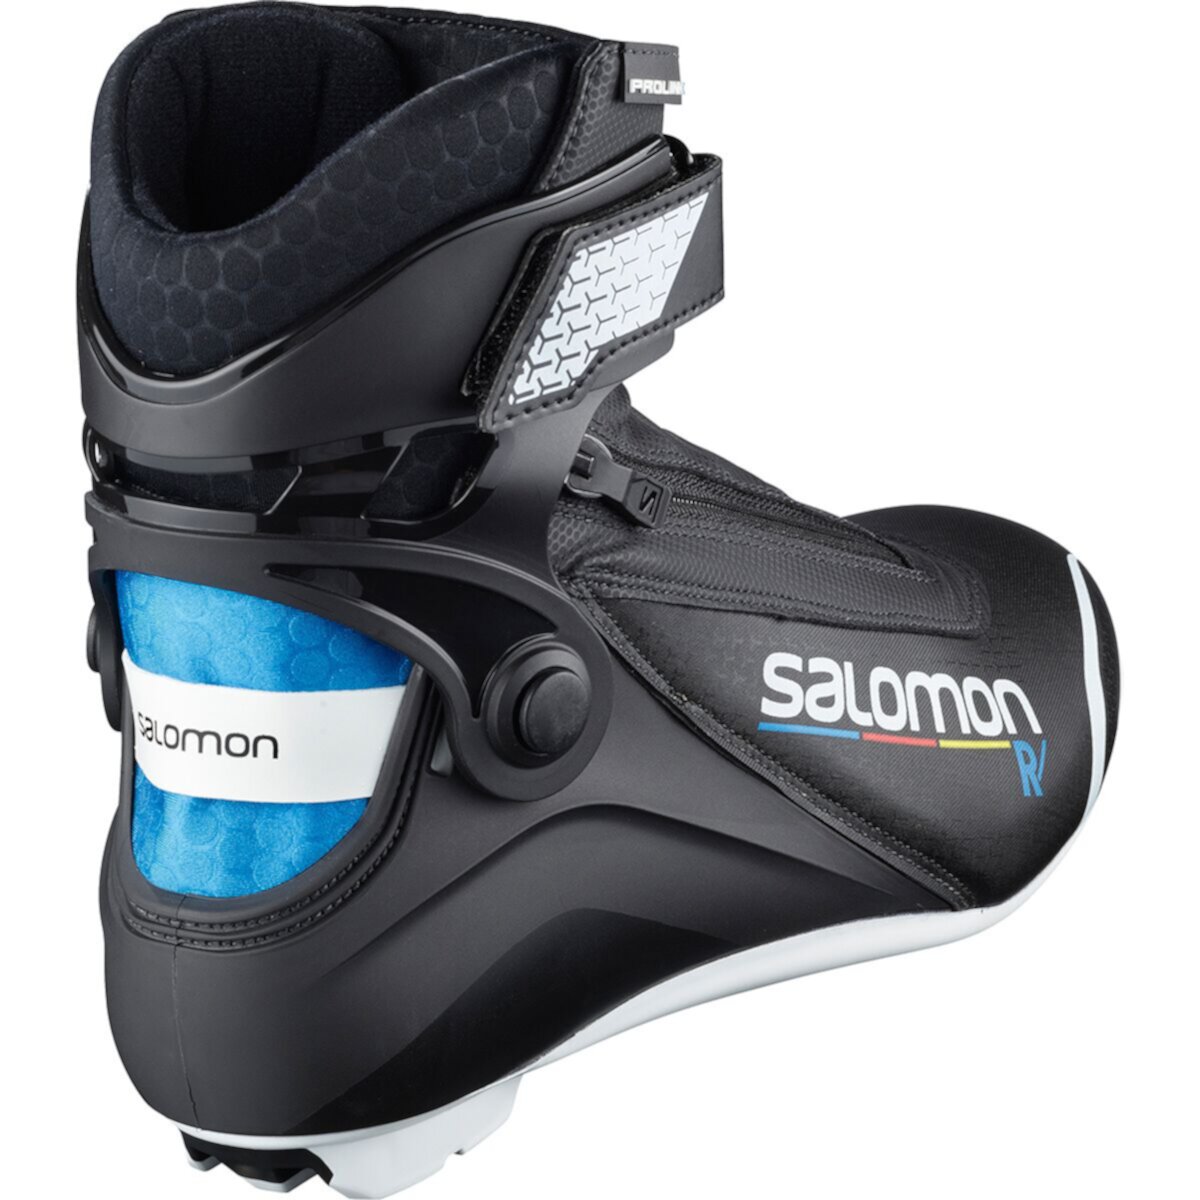 Ботинки для коньков Salomon R / Prolink Salomon